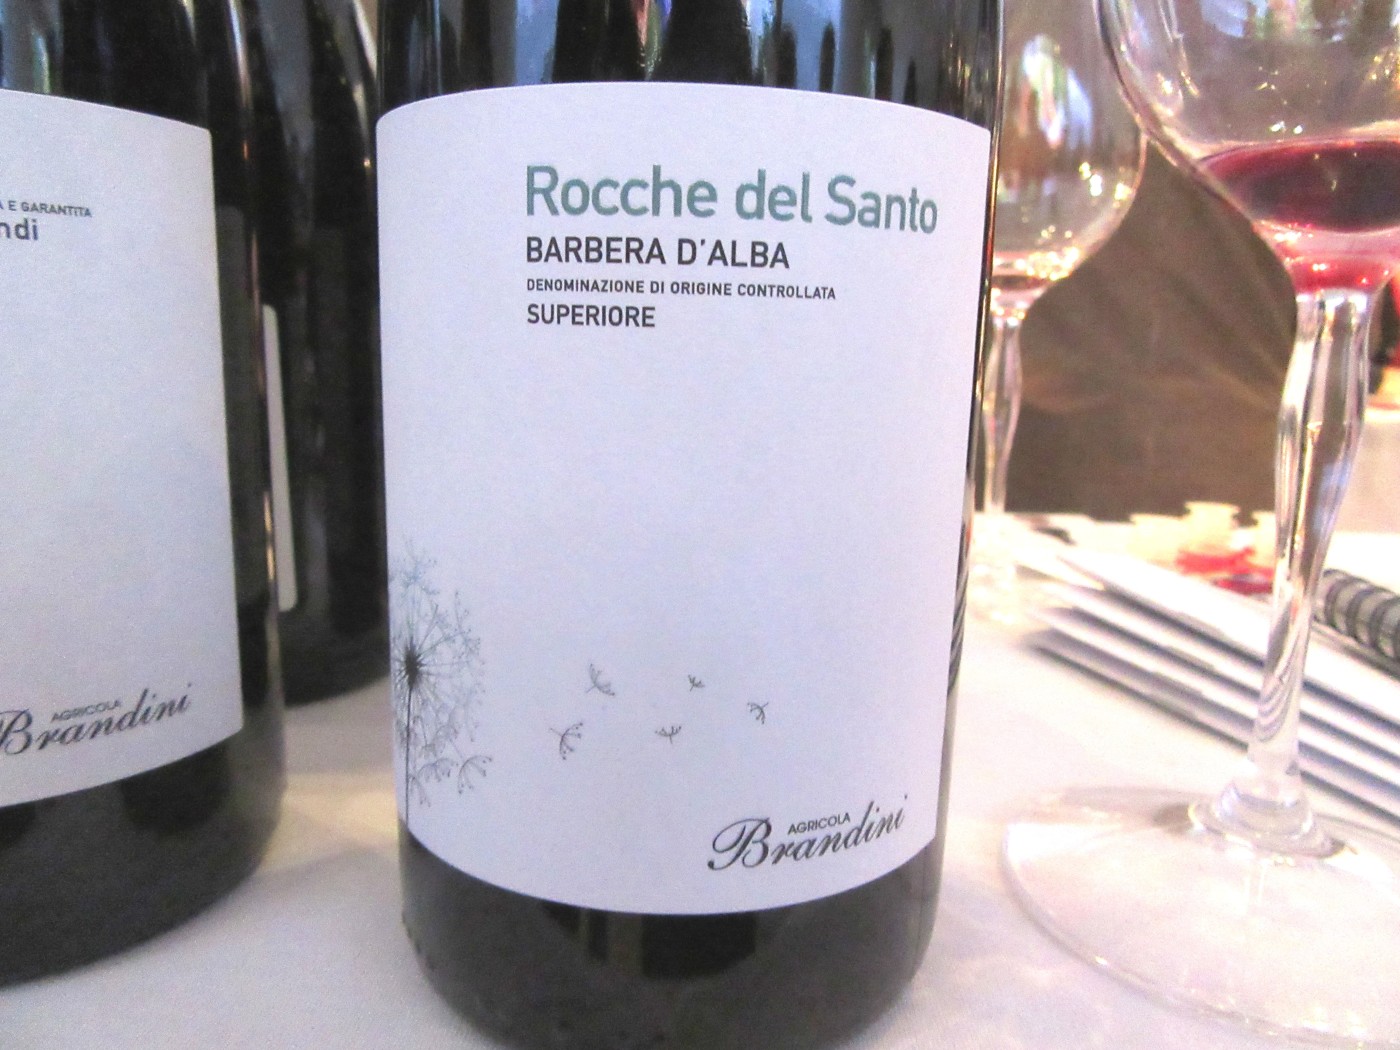 Agricola Bradini, Barbera d’Alba Superiore Rocche del Santo 2013, Piedmont, Italy, Wine Casual